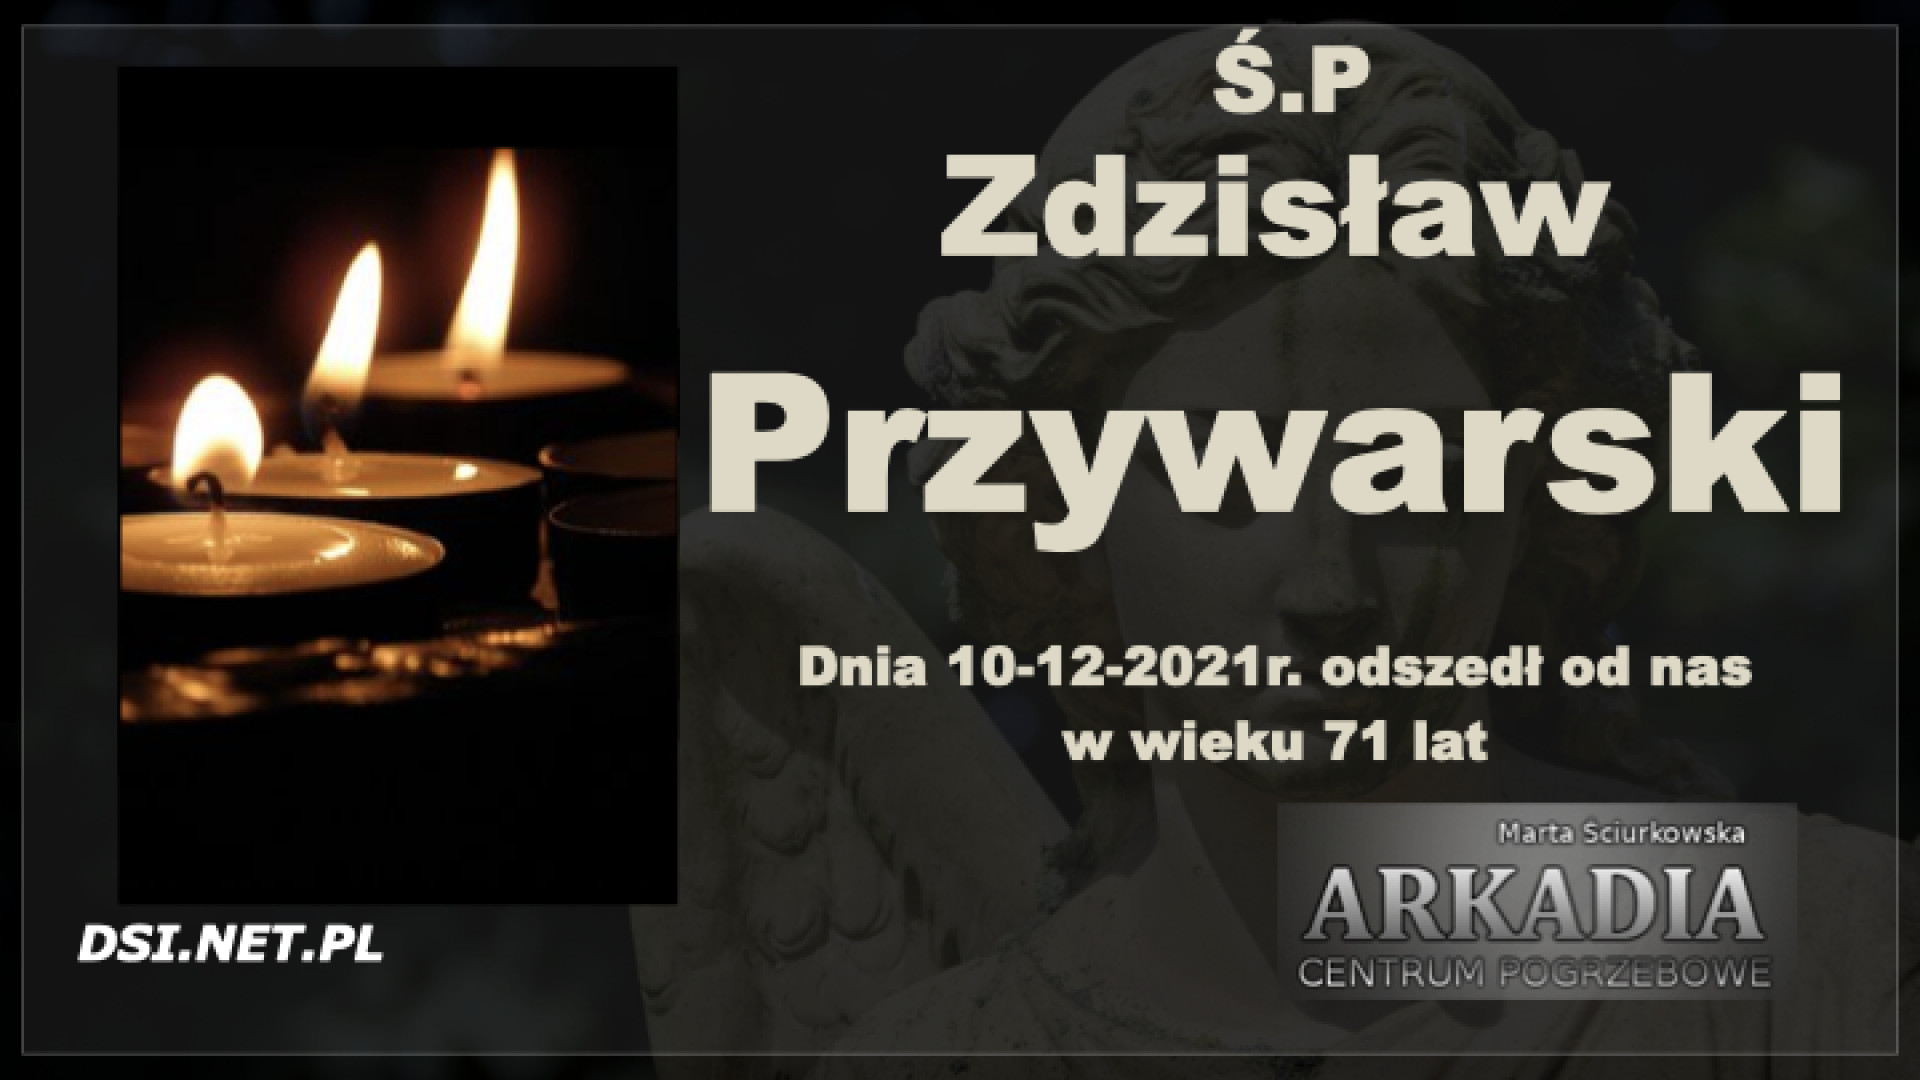 Ś.P. Zdzisław Przywarski